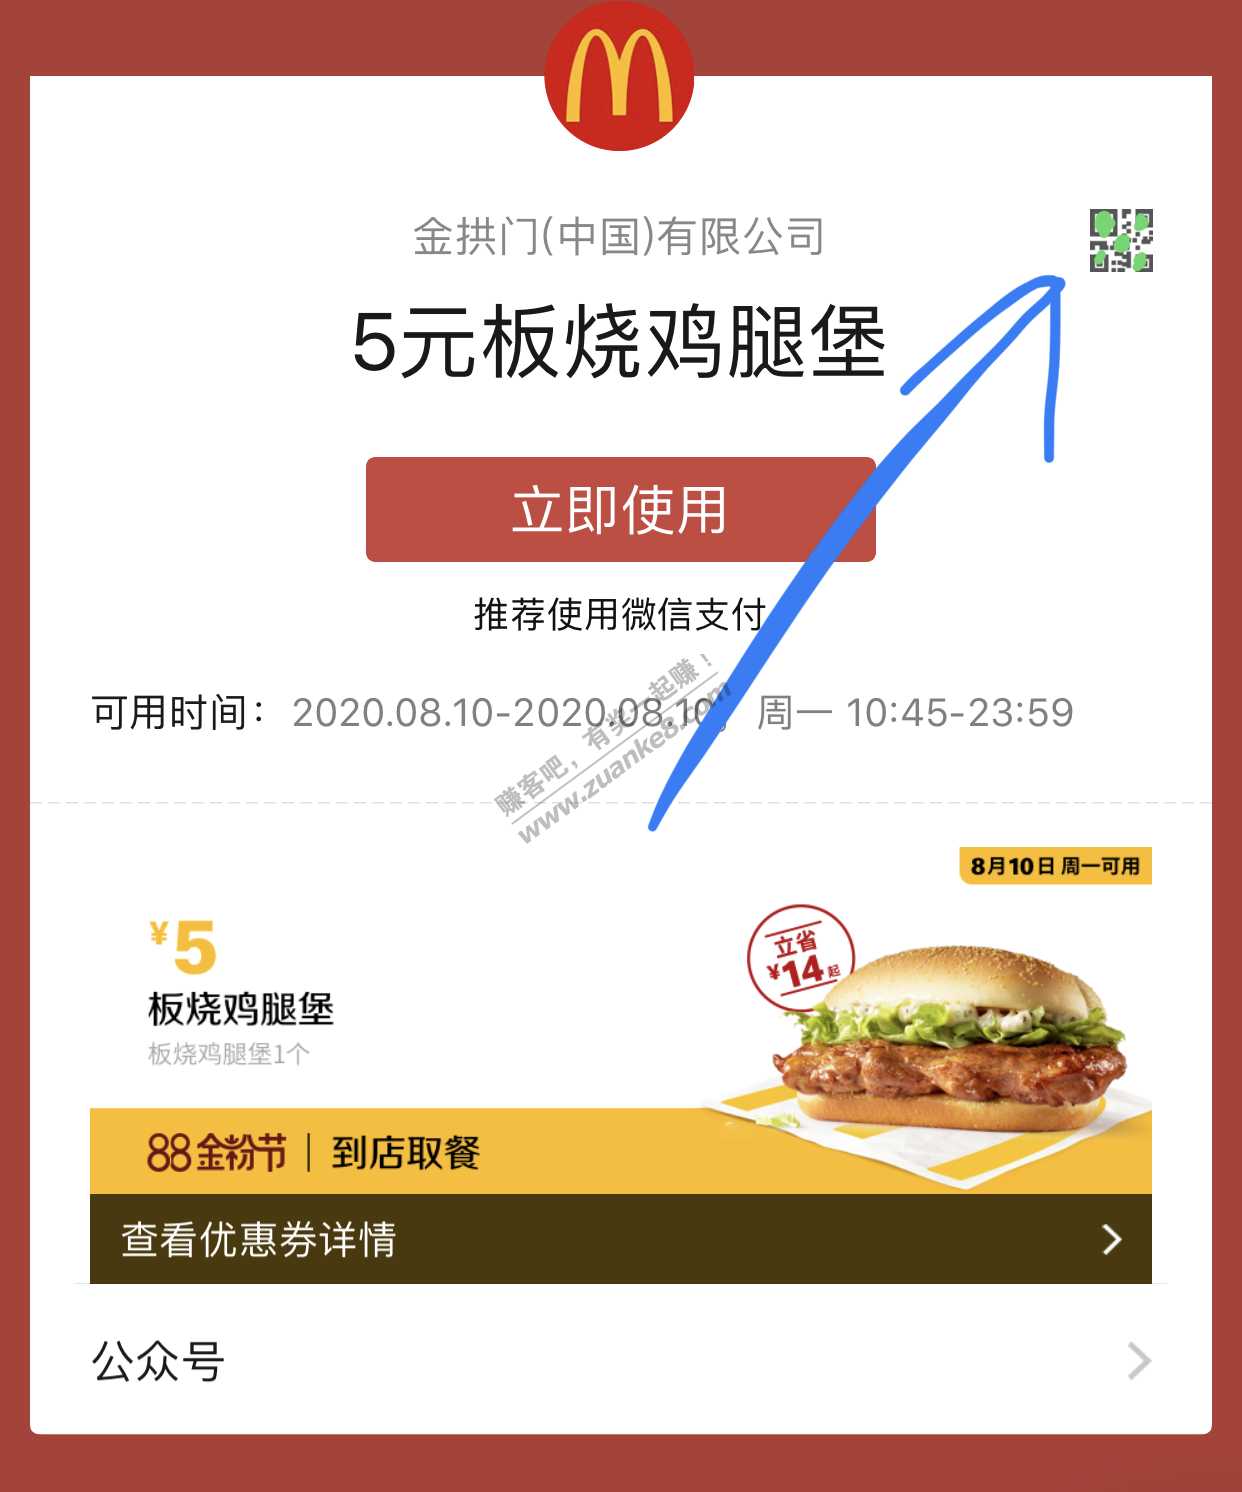 麦当劳现场柜台点单使用微信支付-能使用8.8的立减金吗？-惠小助(52huixz.com)